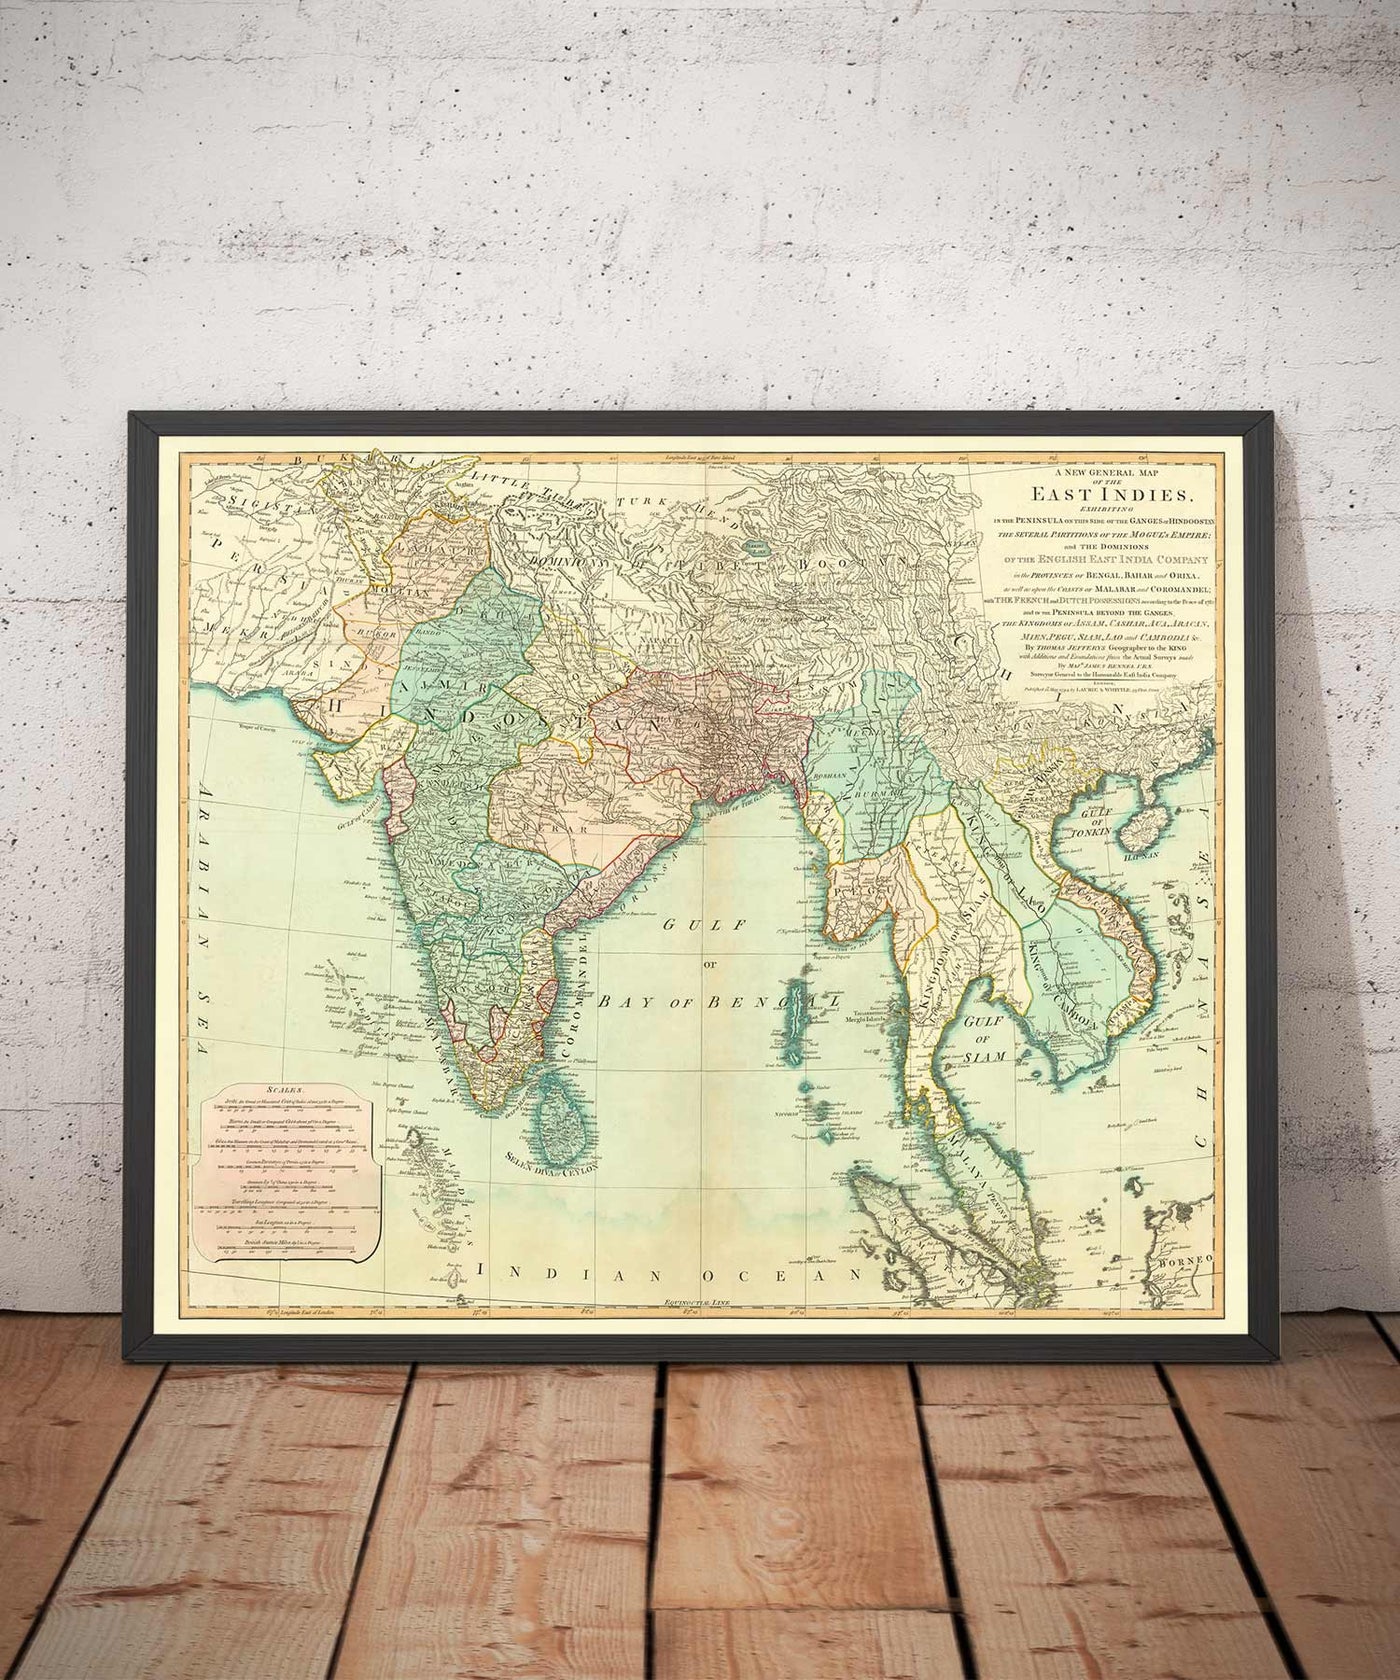 Old Map of the East Inies, 1794 - Inde, Hindustan, Chine, Vietnam, Thaïlande, Siam, Birmanie, Malaisie, Vietnam, Pegu